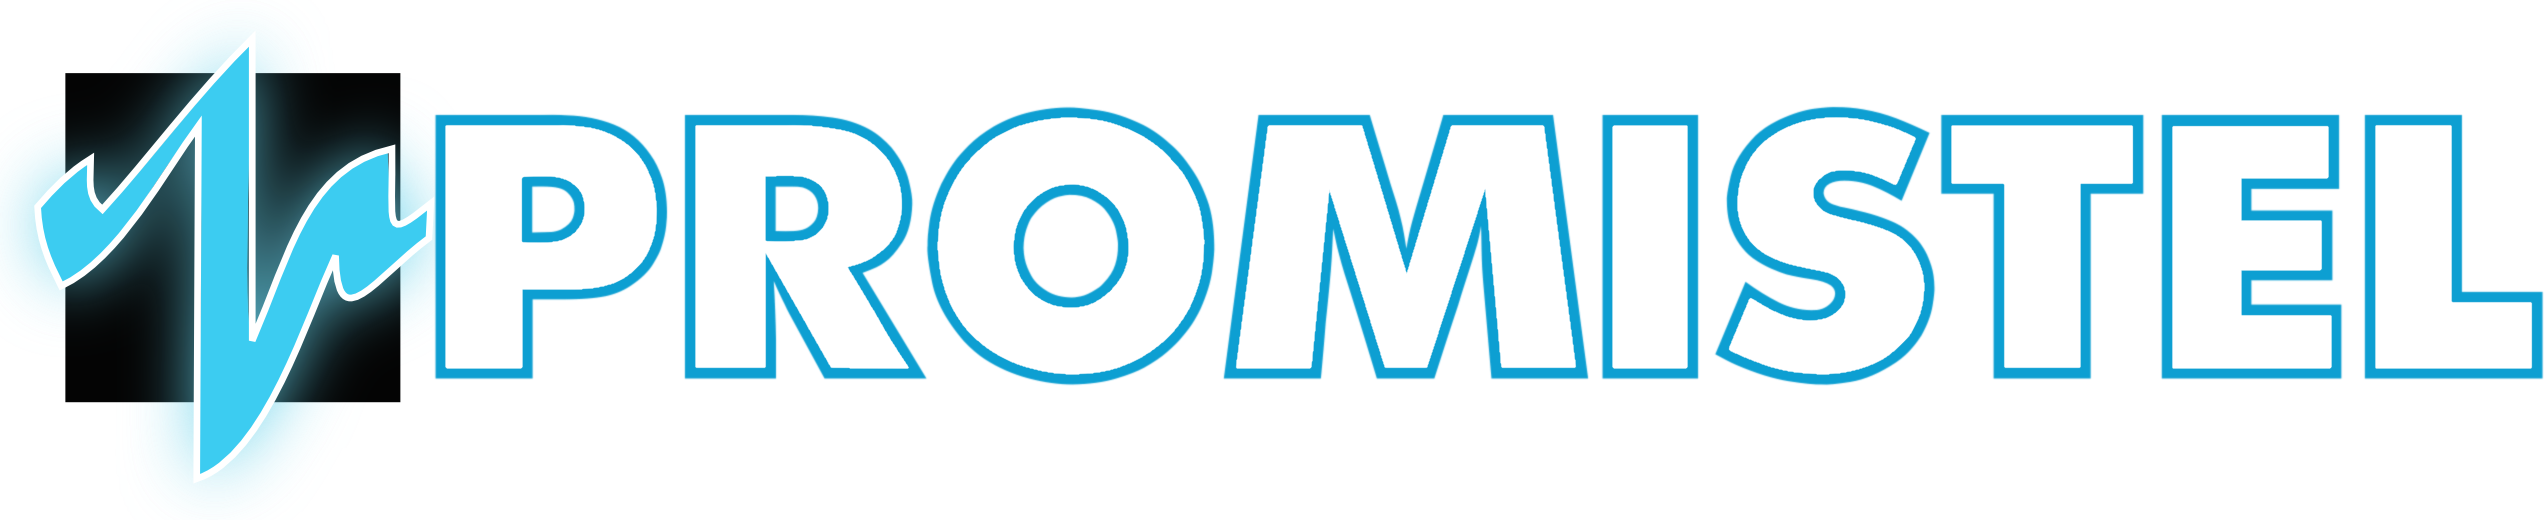 Promistel logo